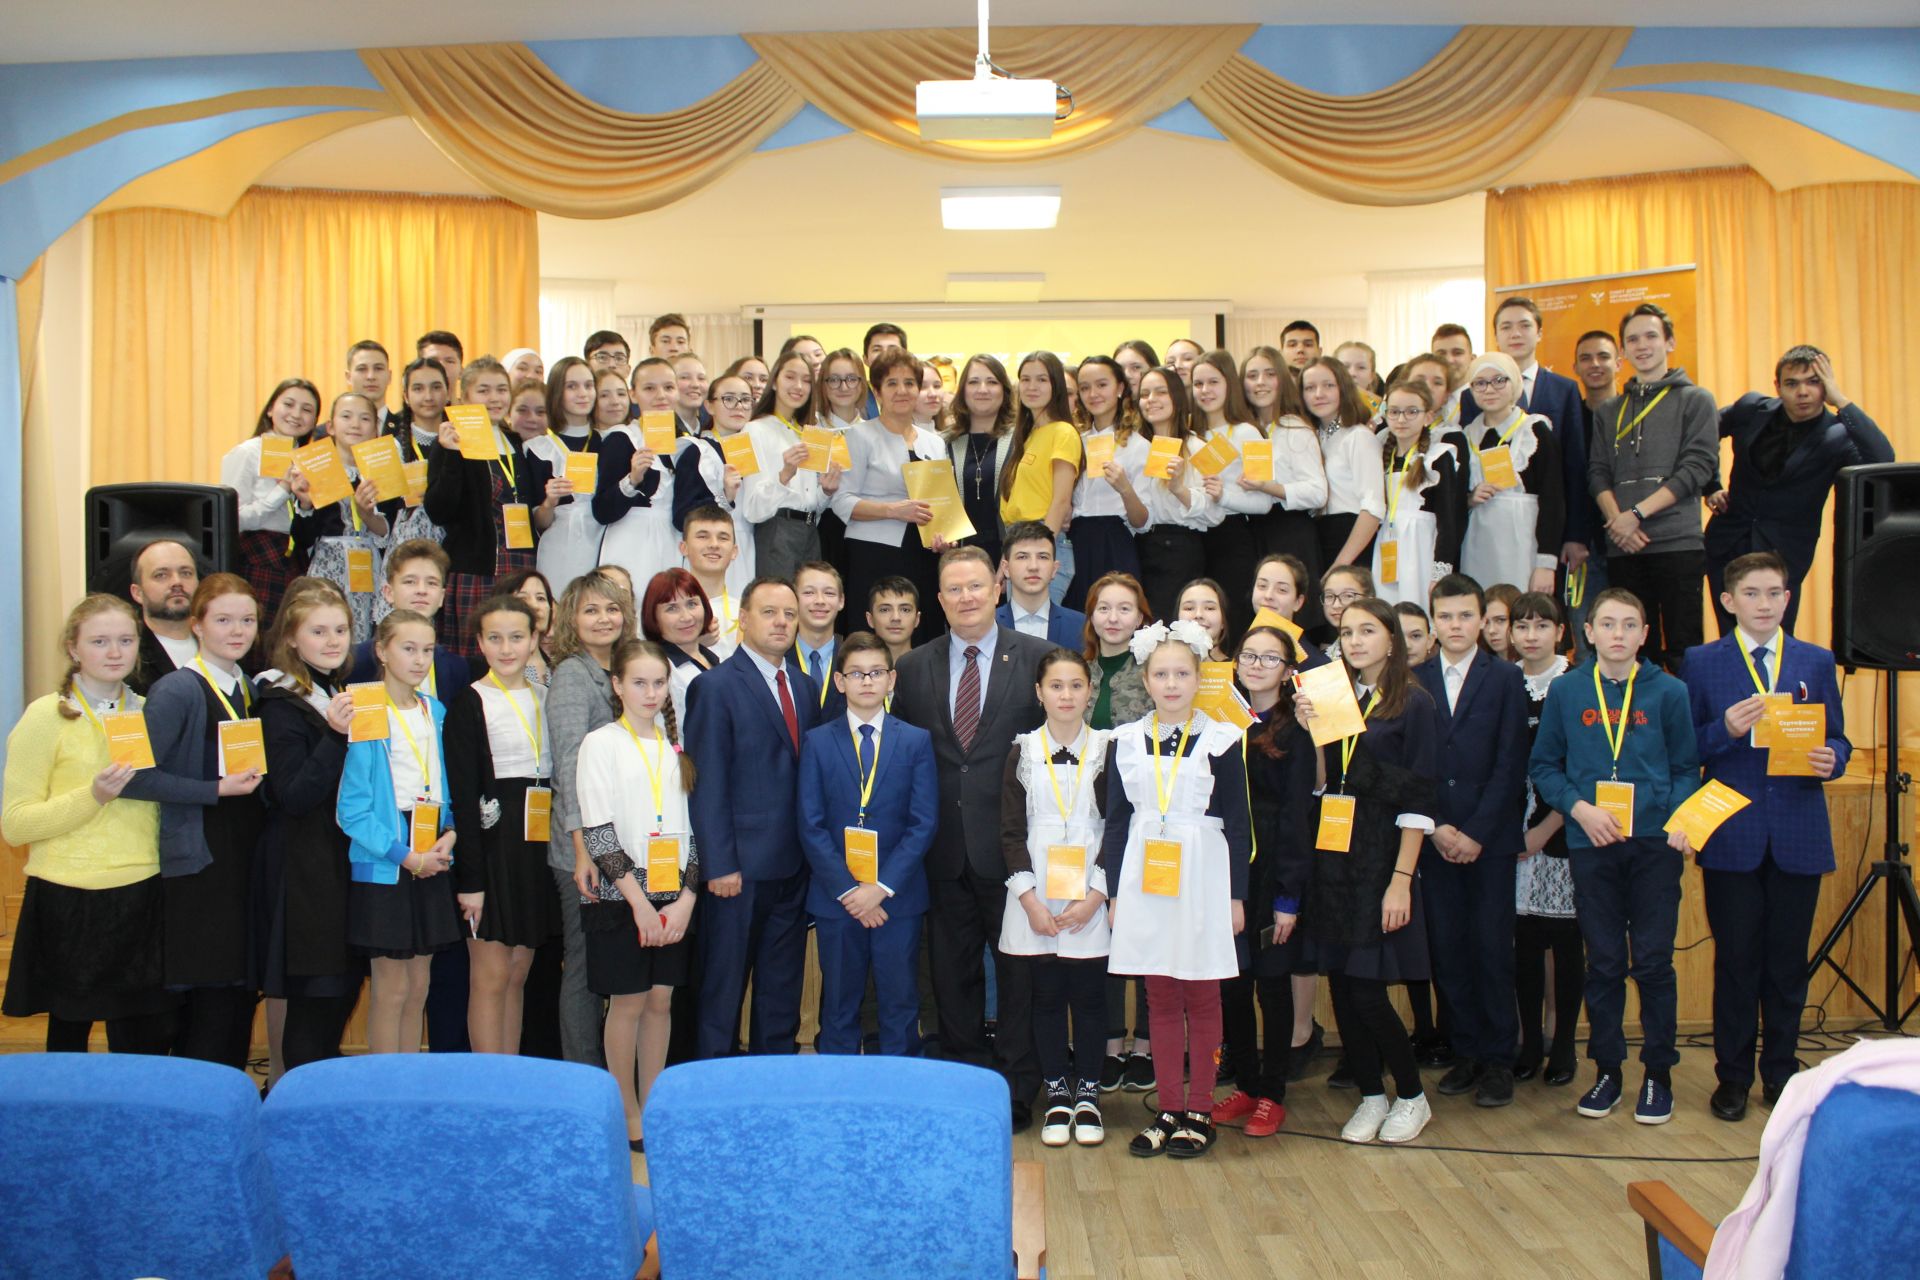 В Кукморе состоялся форум юных граждан Республики Татарстан